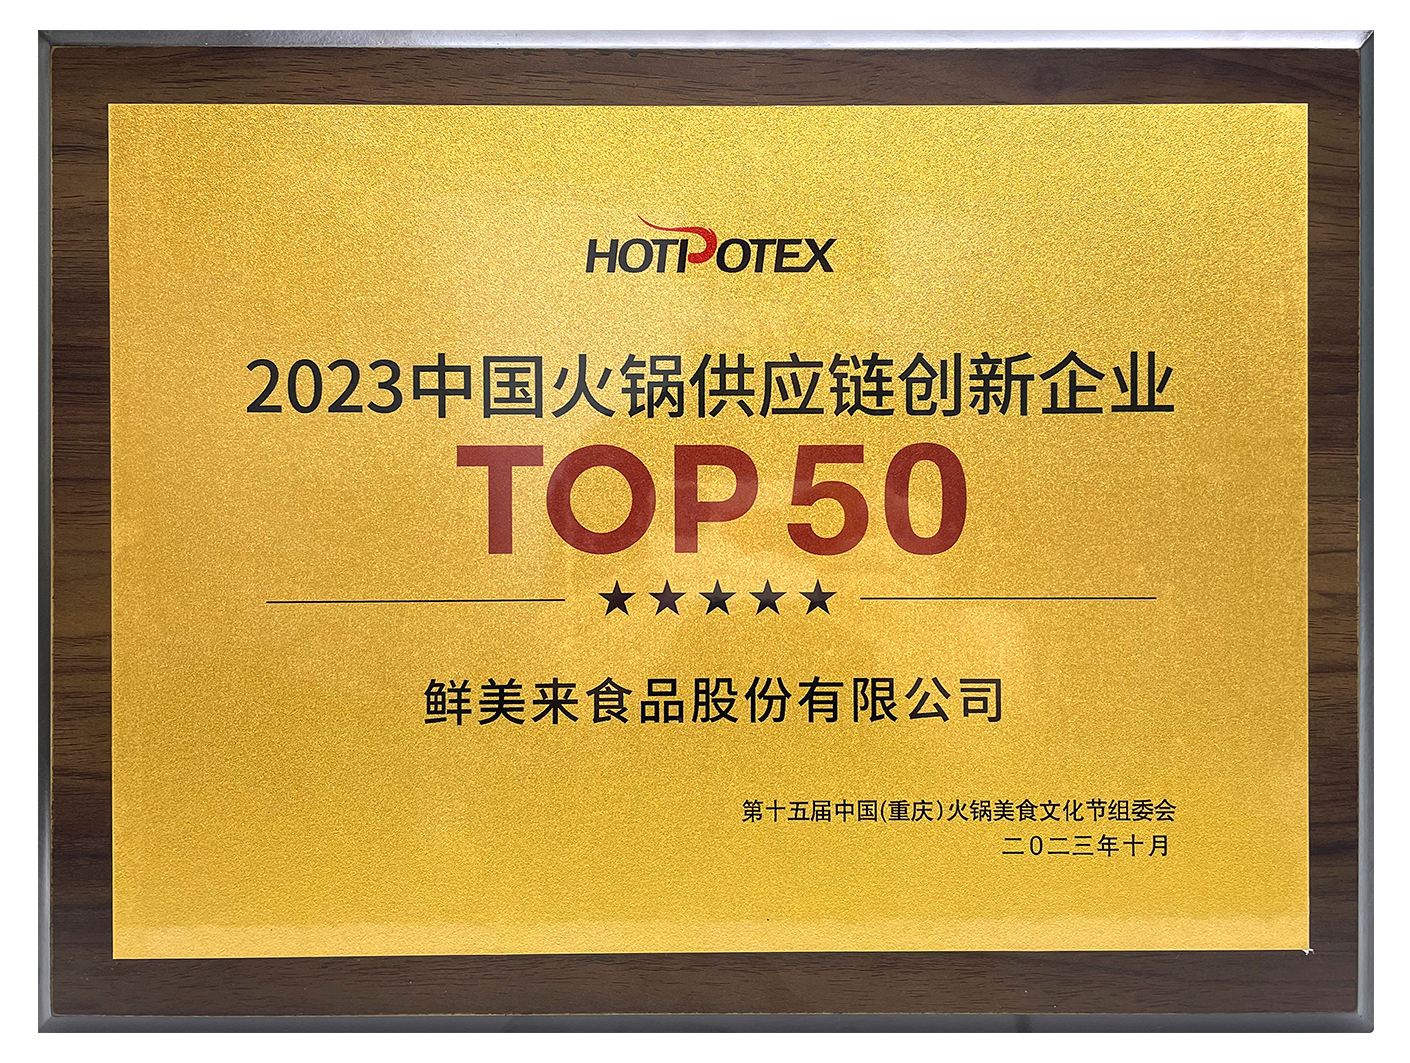 2023中国火锅供应链创新企业TOP 50